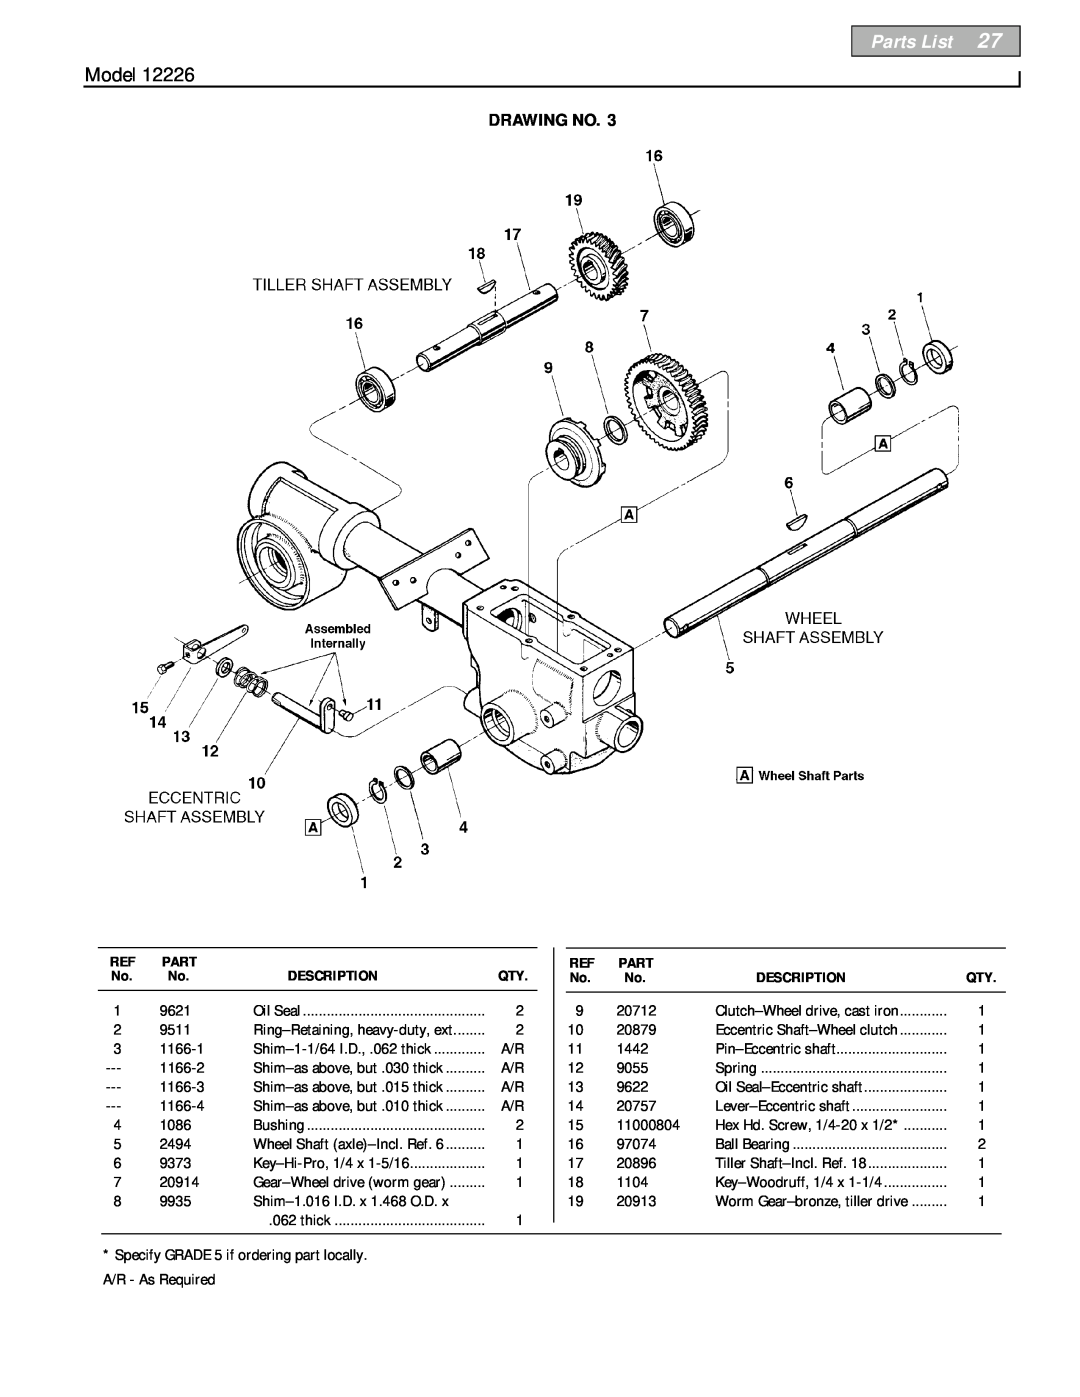 Bolens 12226 owner manual Parts List, Model, Drawing No, Description 